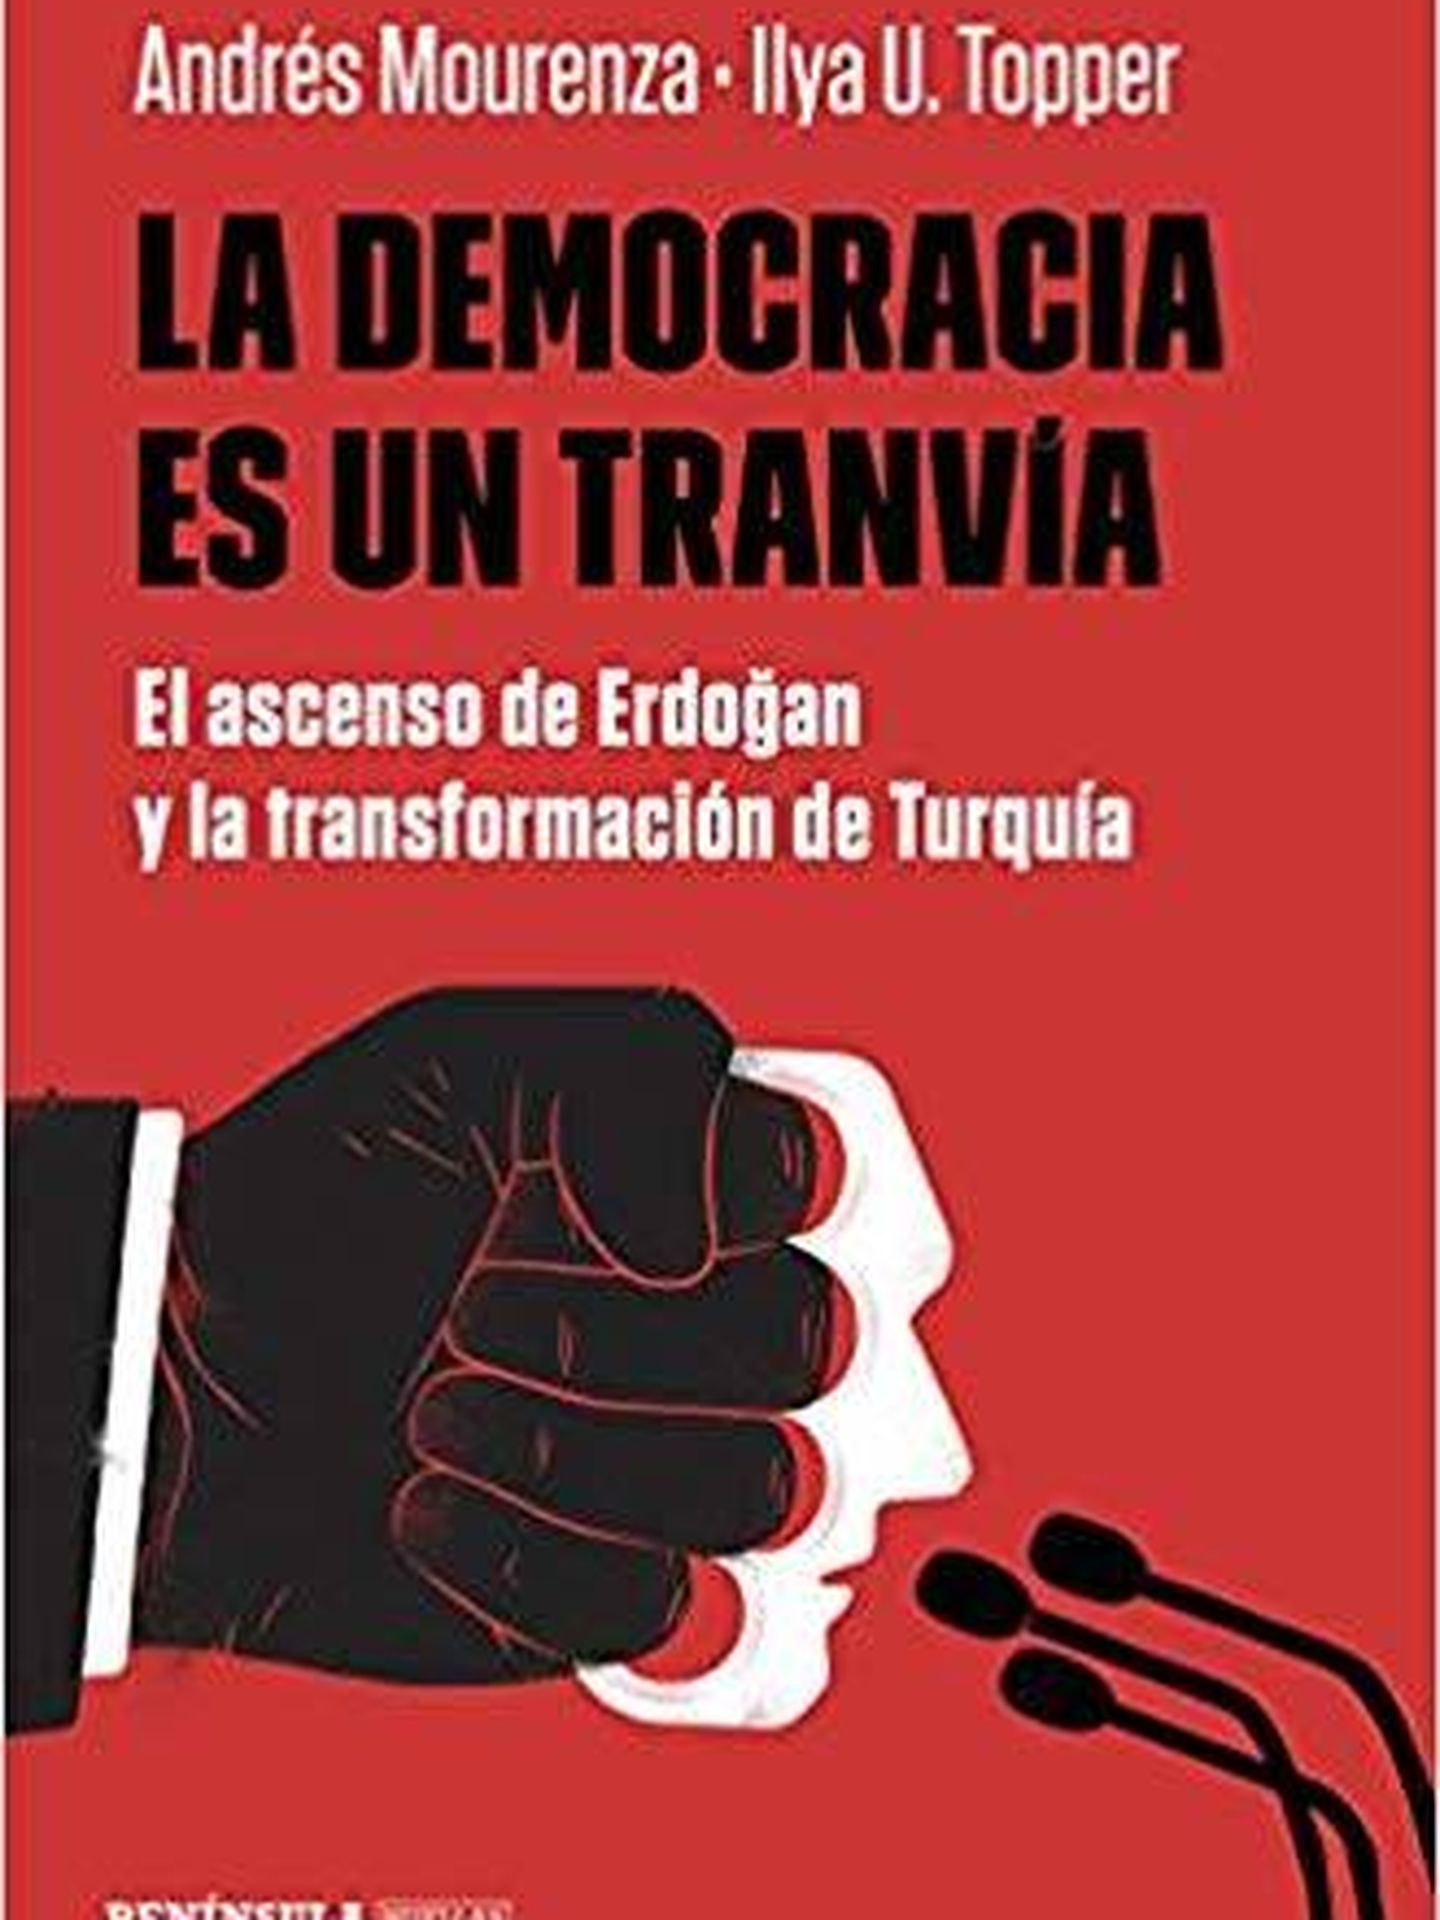 La democracia es un tranvía, por Ilya U. Topper y Andrés Mourenza. (Ed: Península)